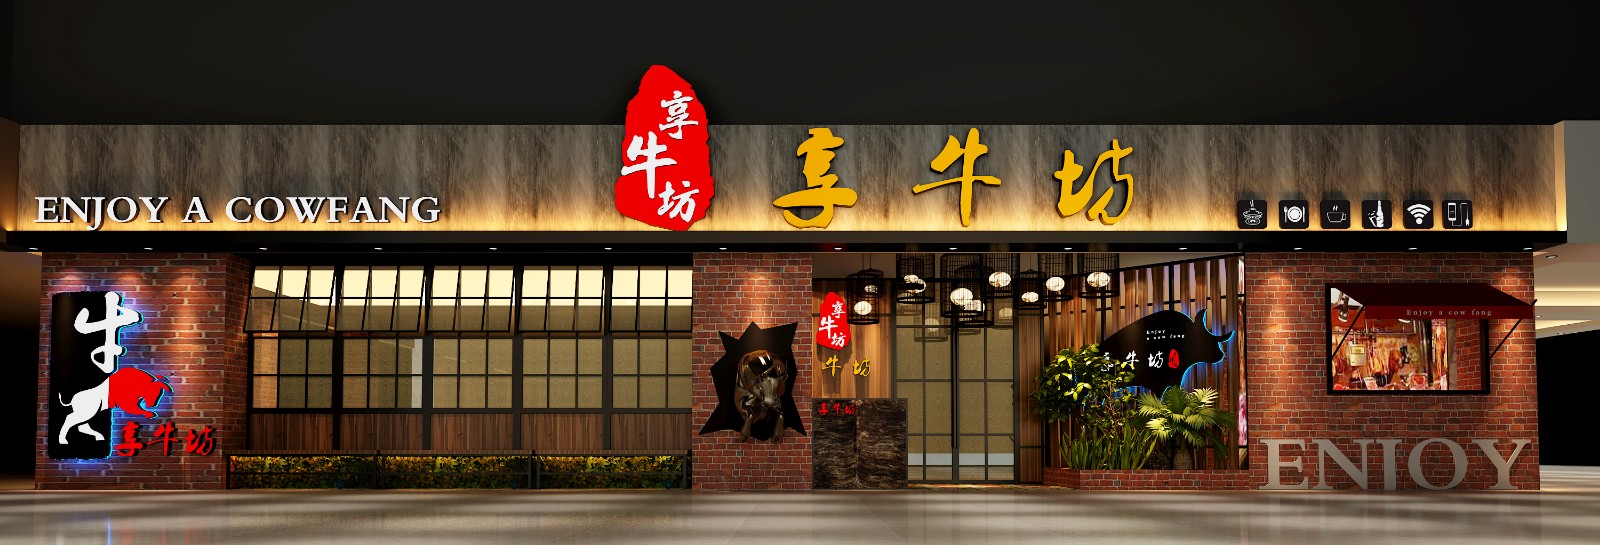 赵婷-享牛坊火锅餐厅